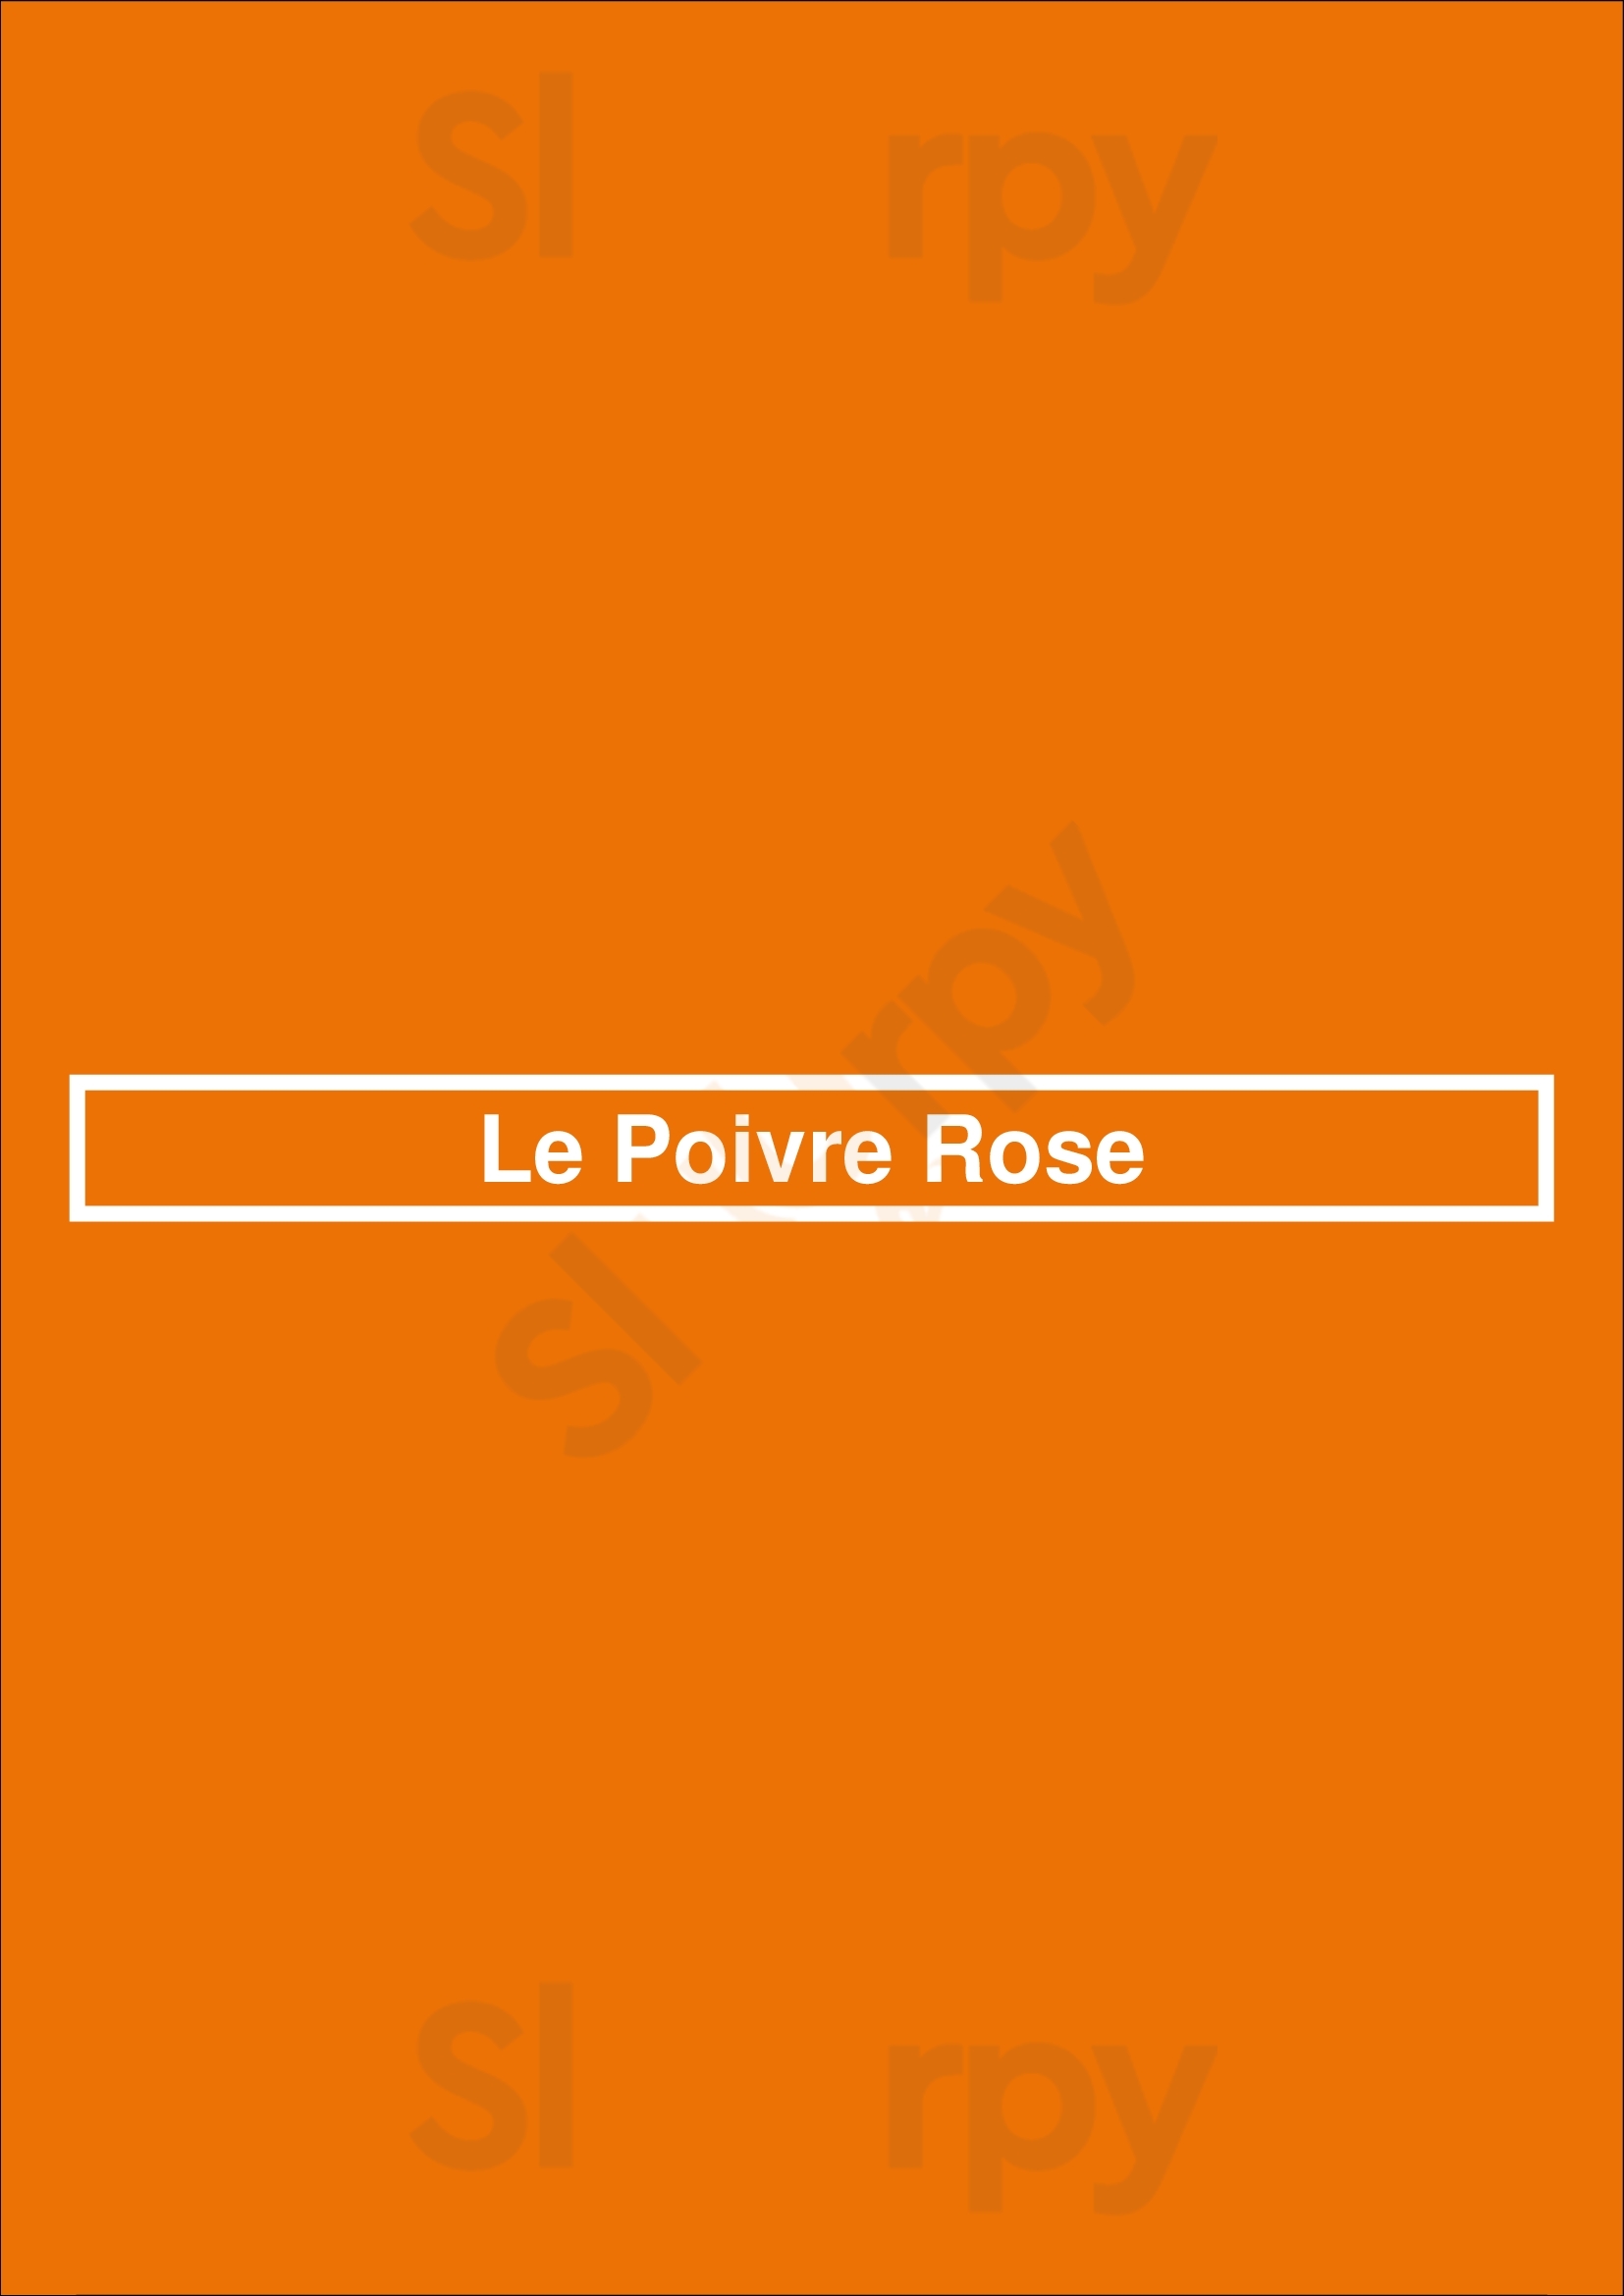 Le Poivre Rose Paris Menu - 1